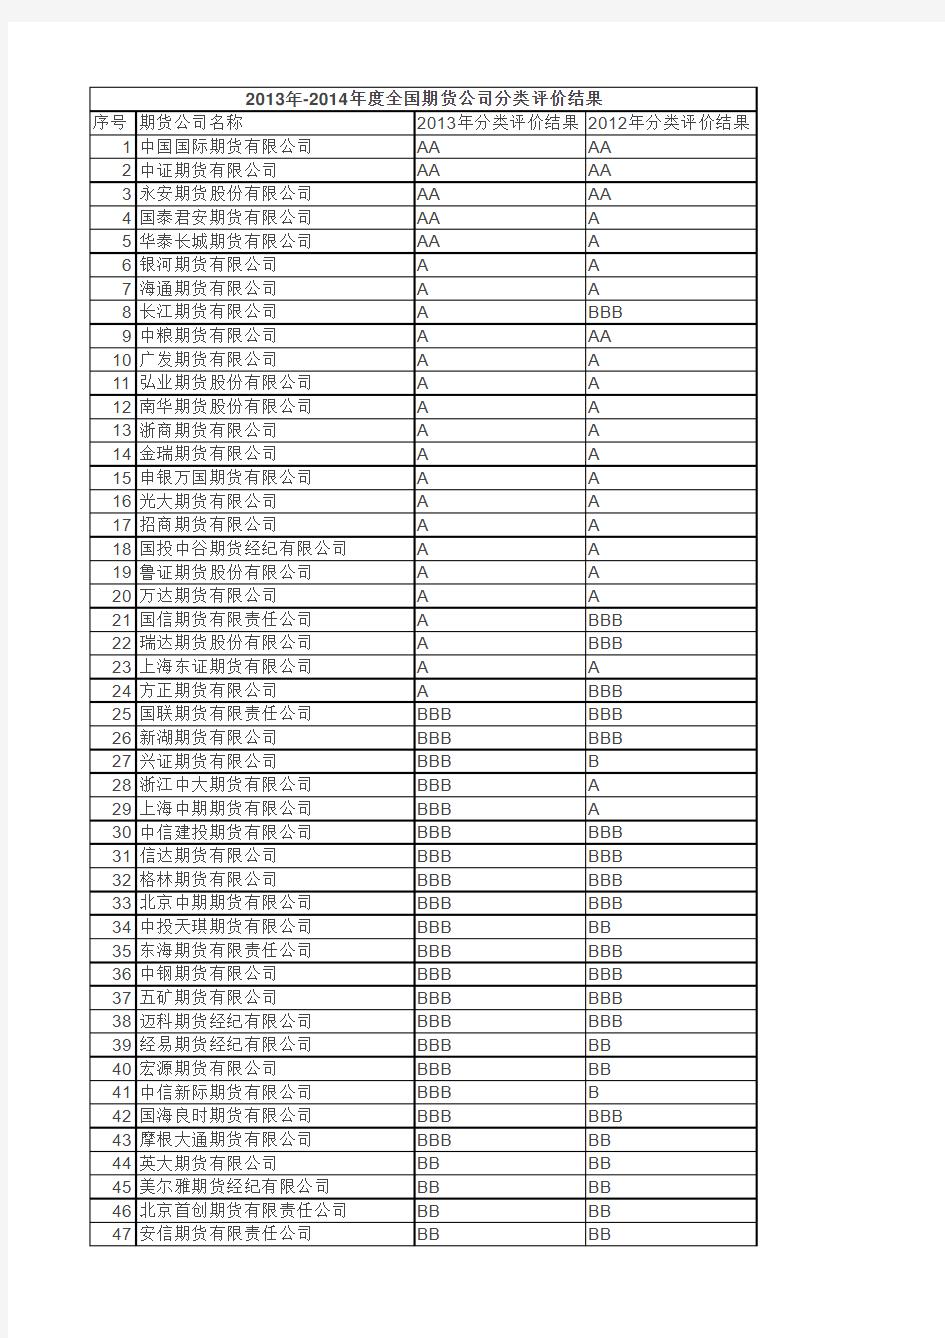 2013-2014期貨公司排名